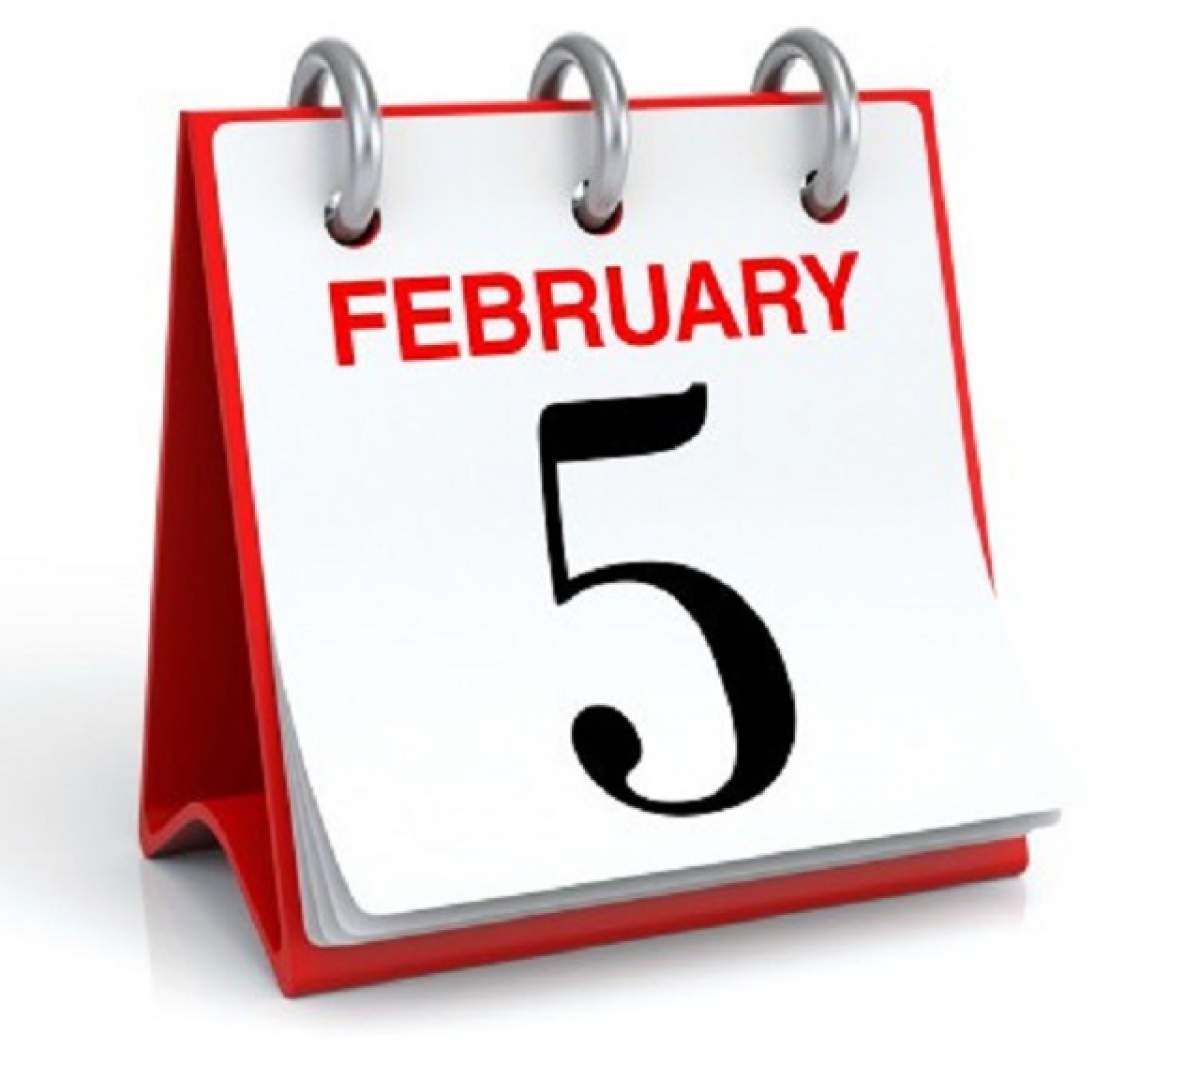 5 februarie nu e doar o dată în calendar. Ziua în care se nasc fotbaliştii. Gică Hagi împlineşte 52 de ani